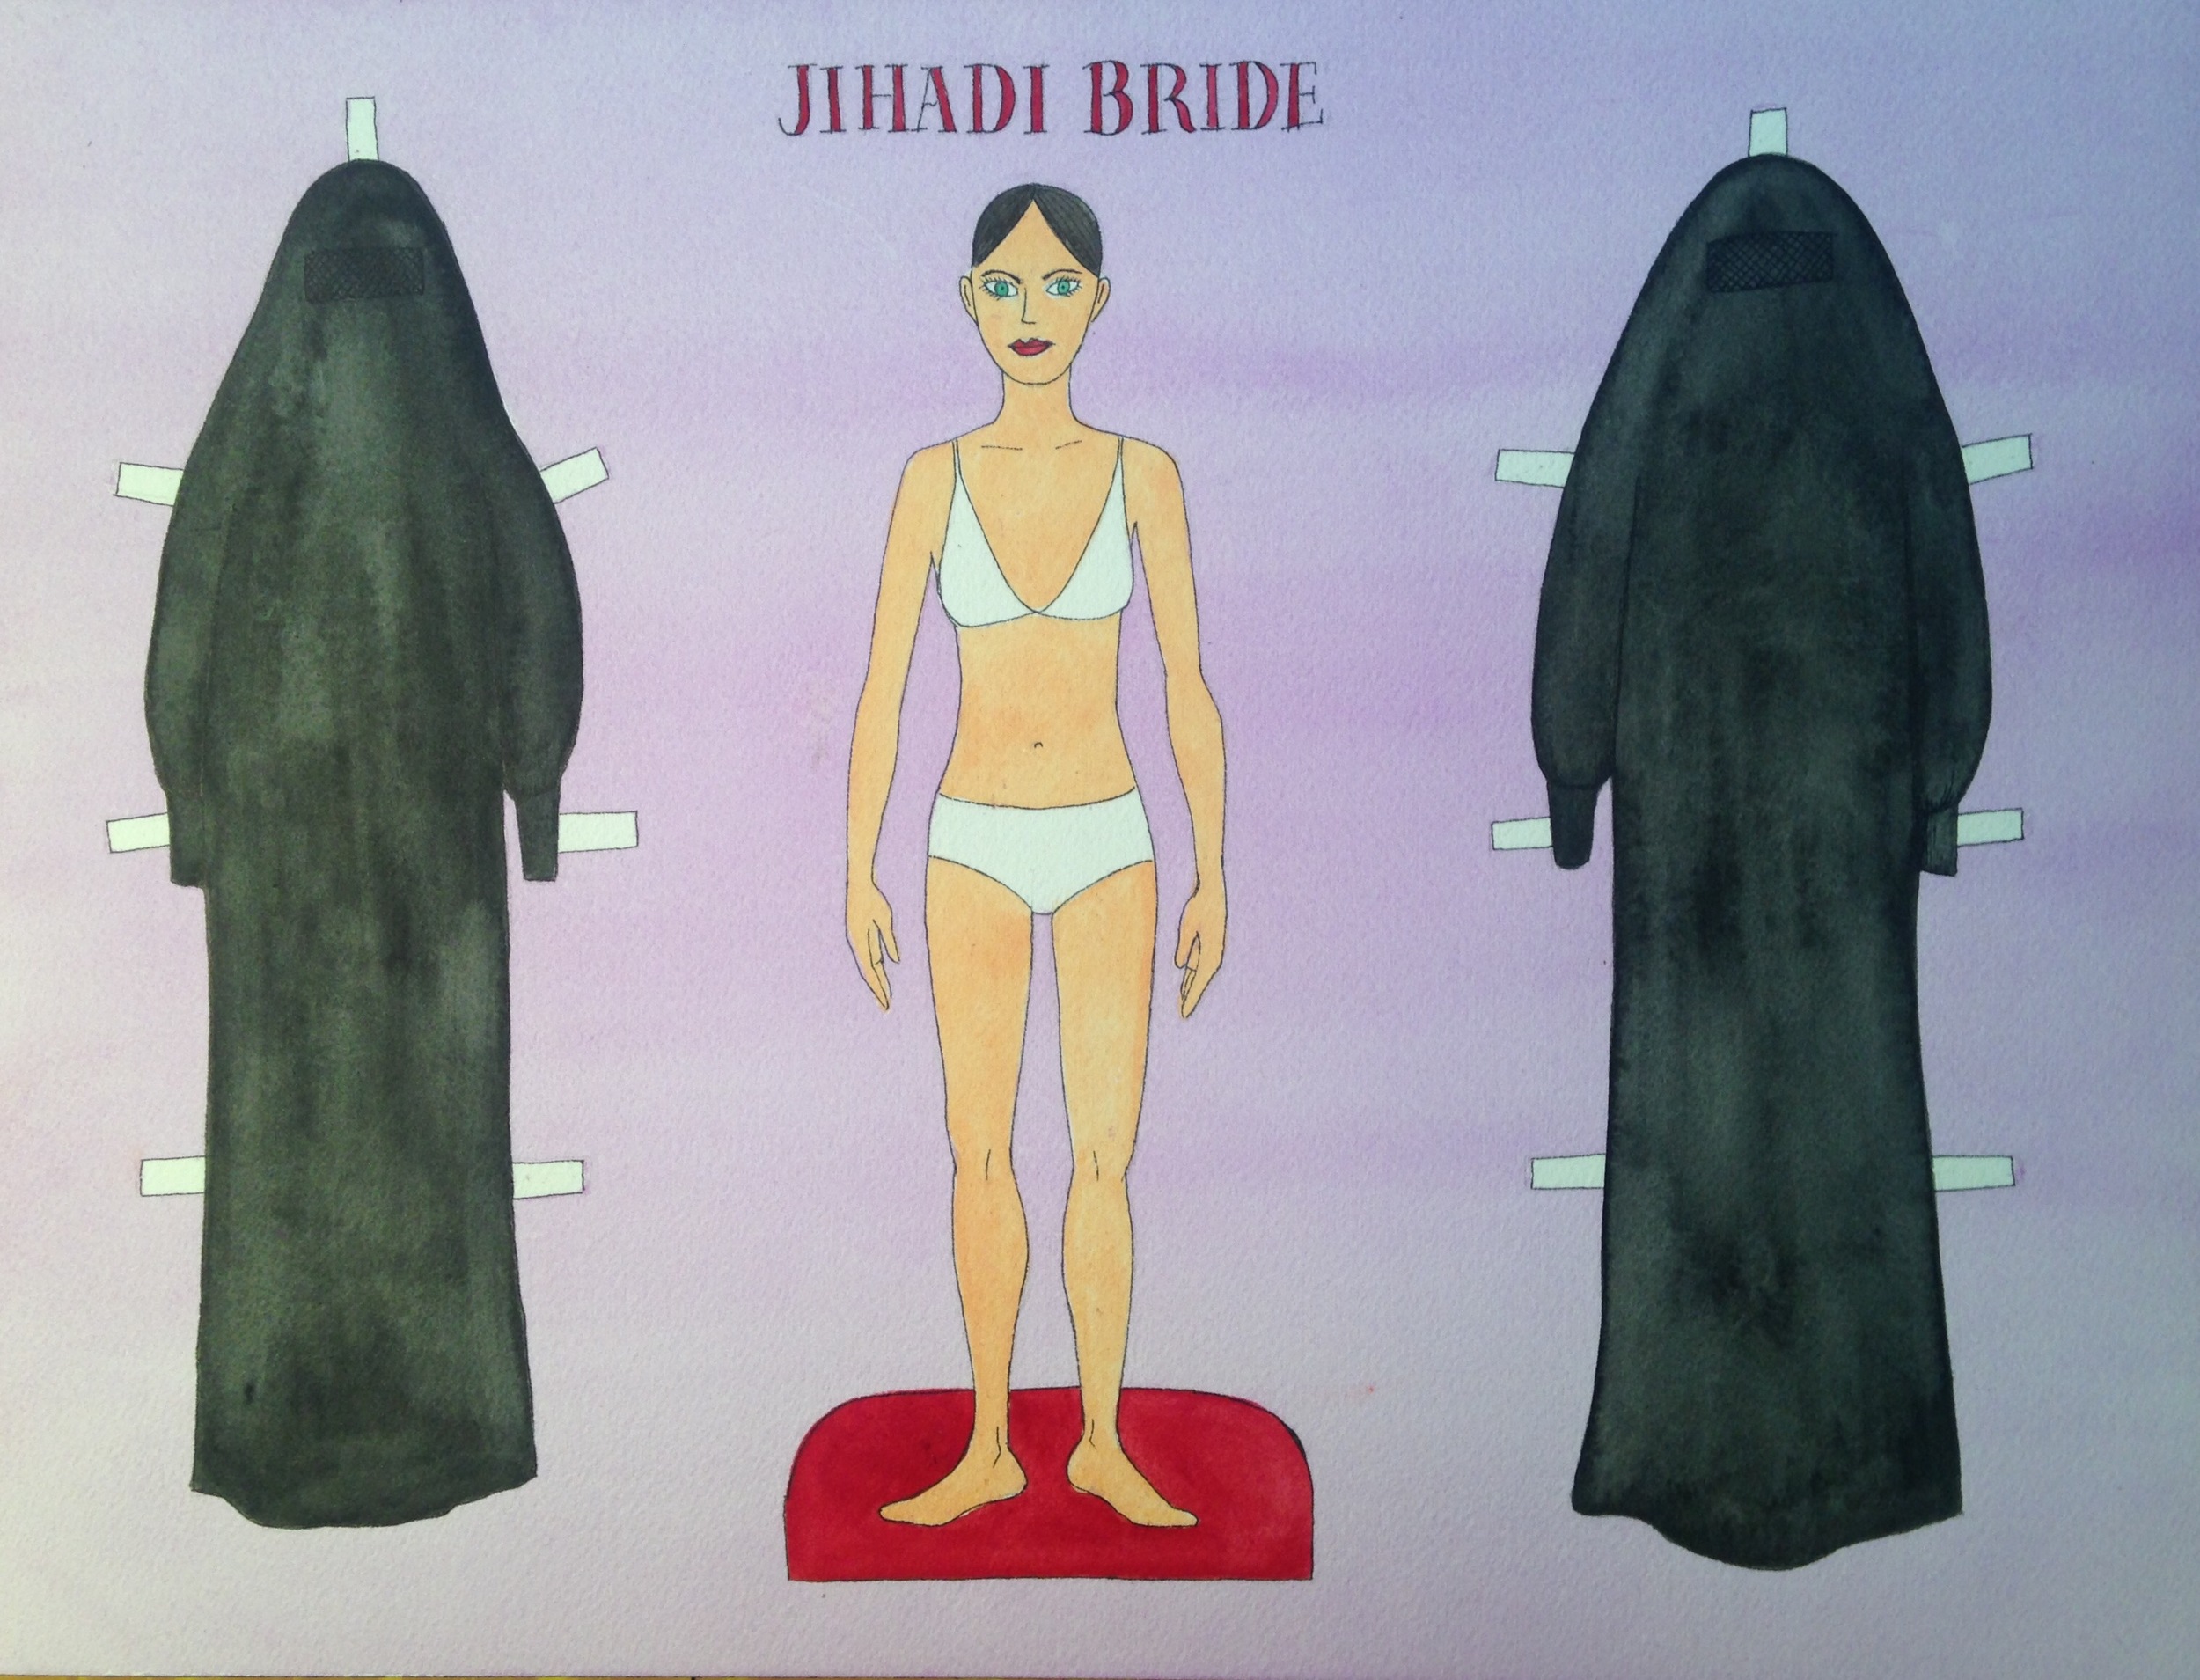 Jihadi Bride, 2015